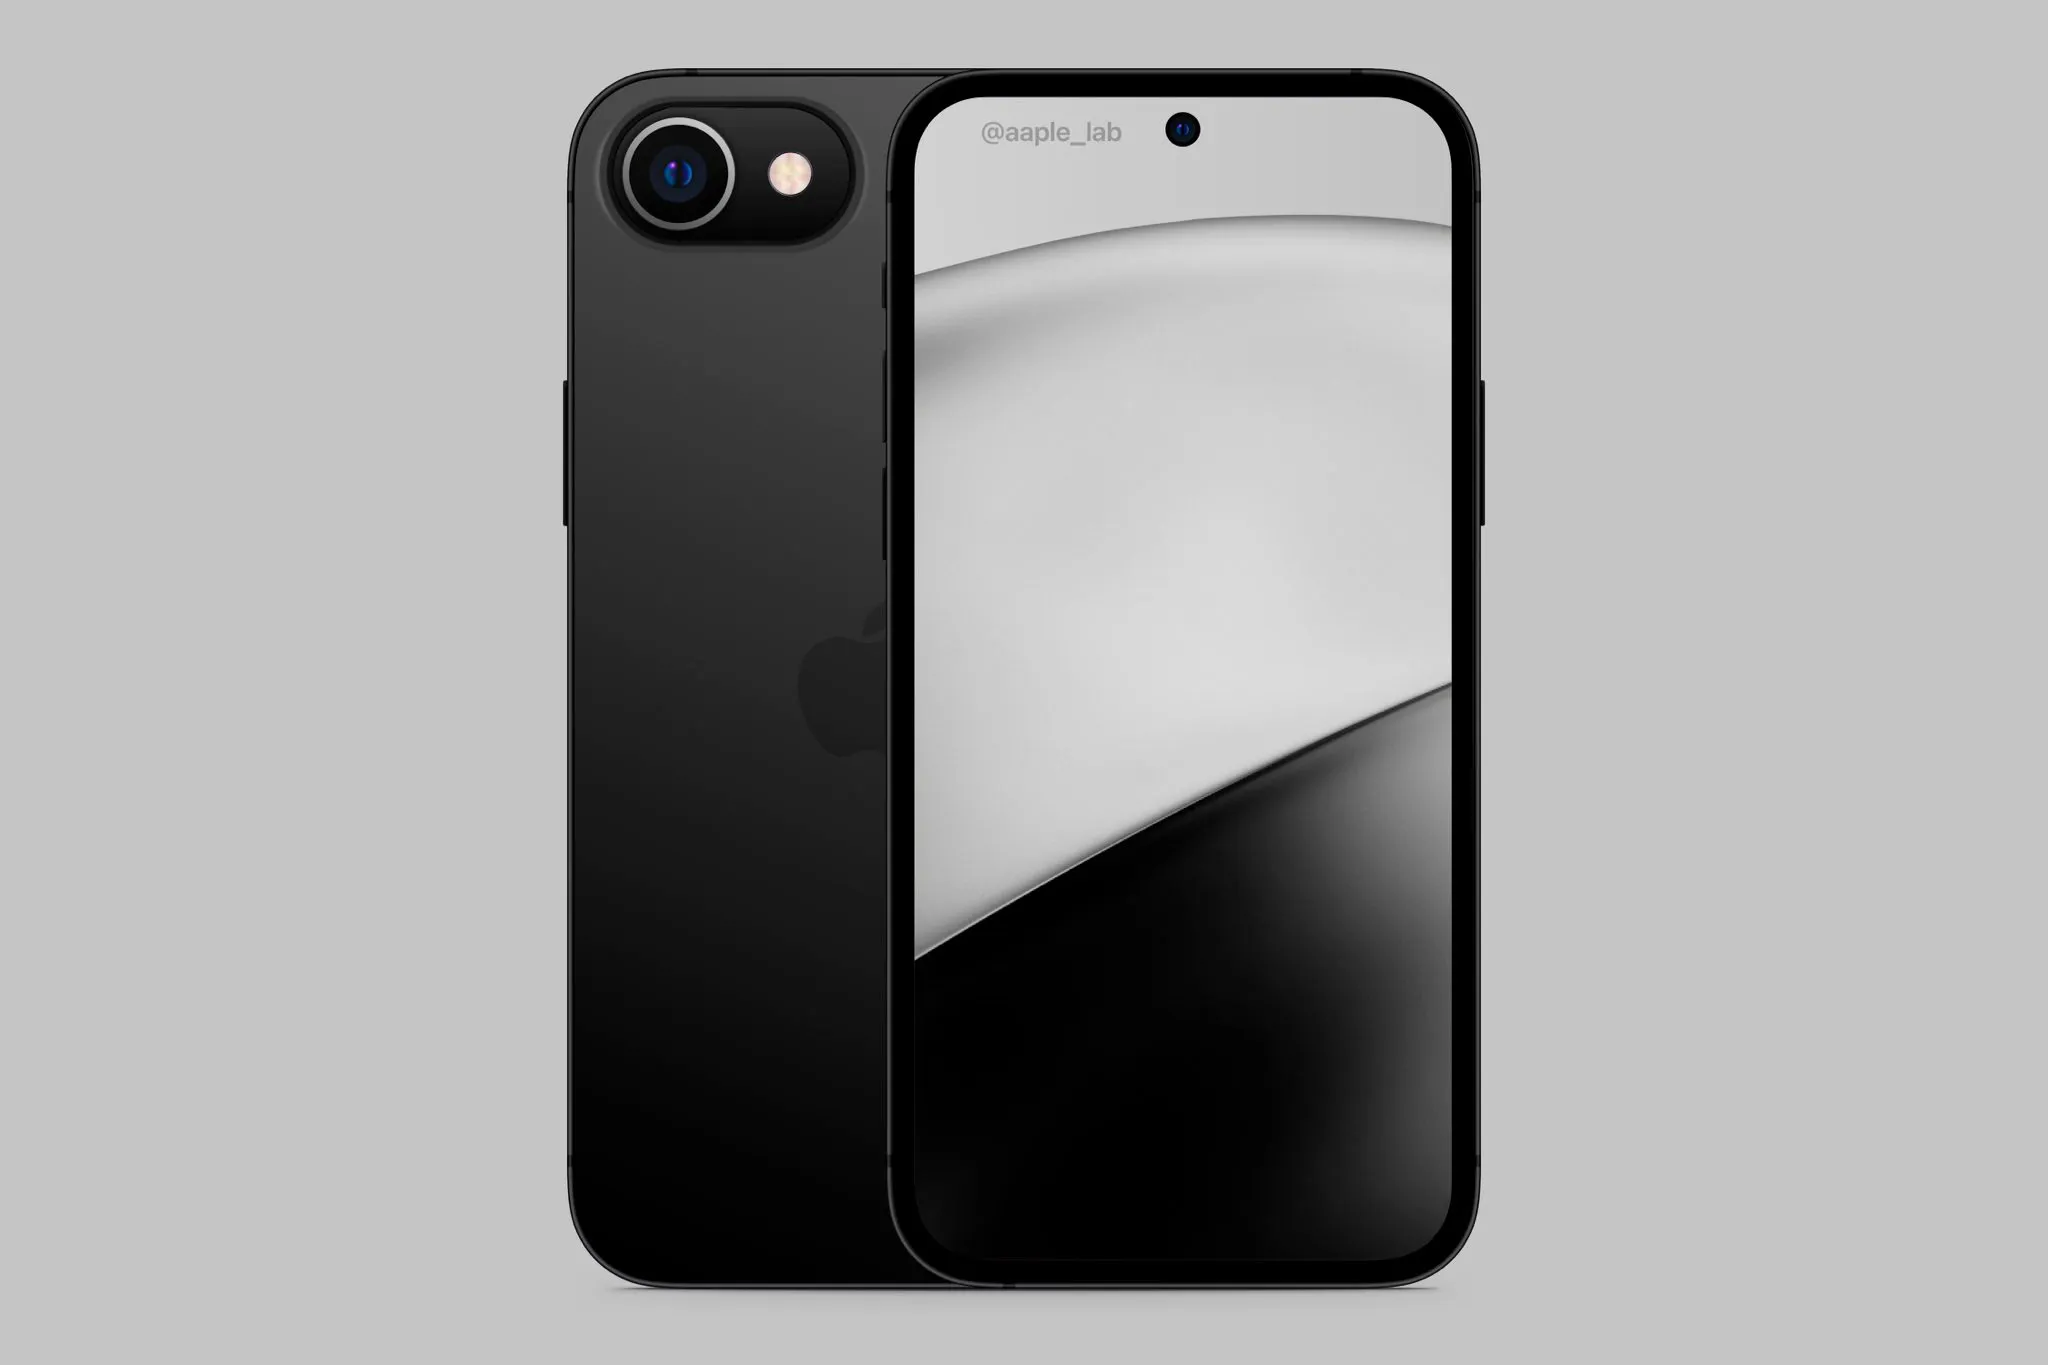 Опубликован концепт смартфона iPhone SE 2022 с врезанной камерой